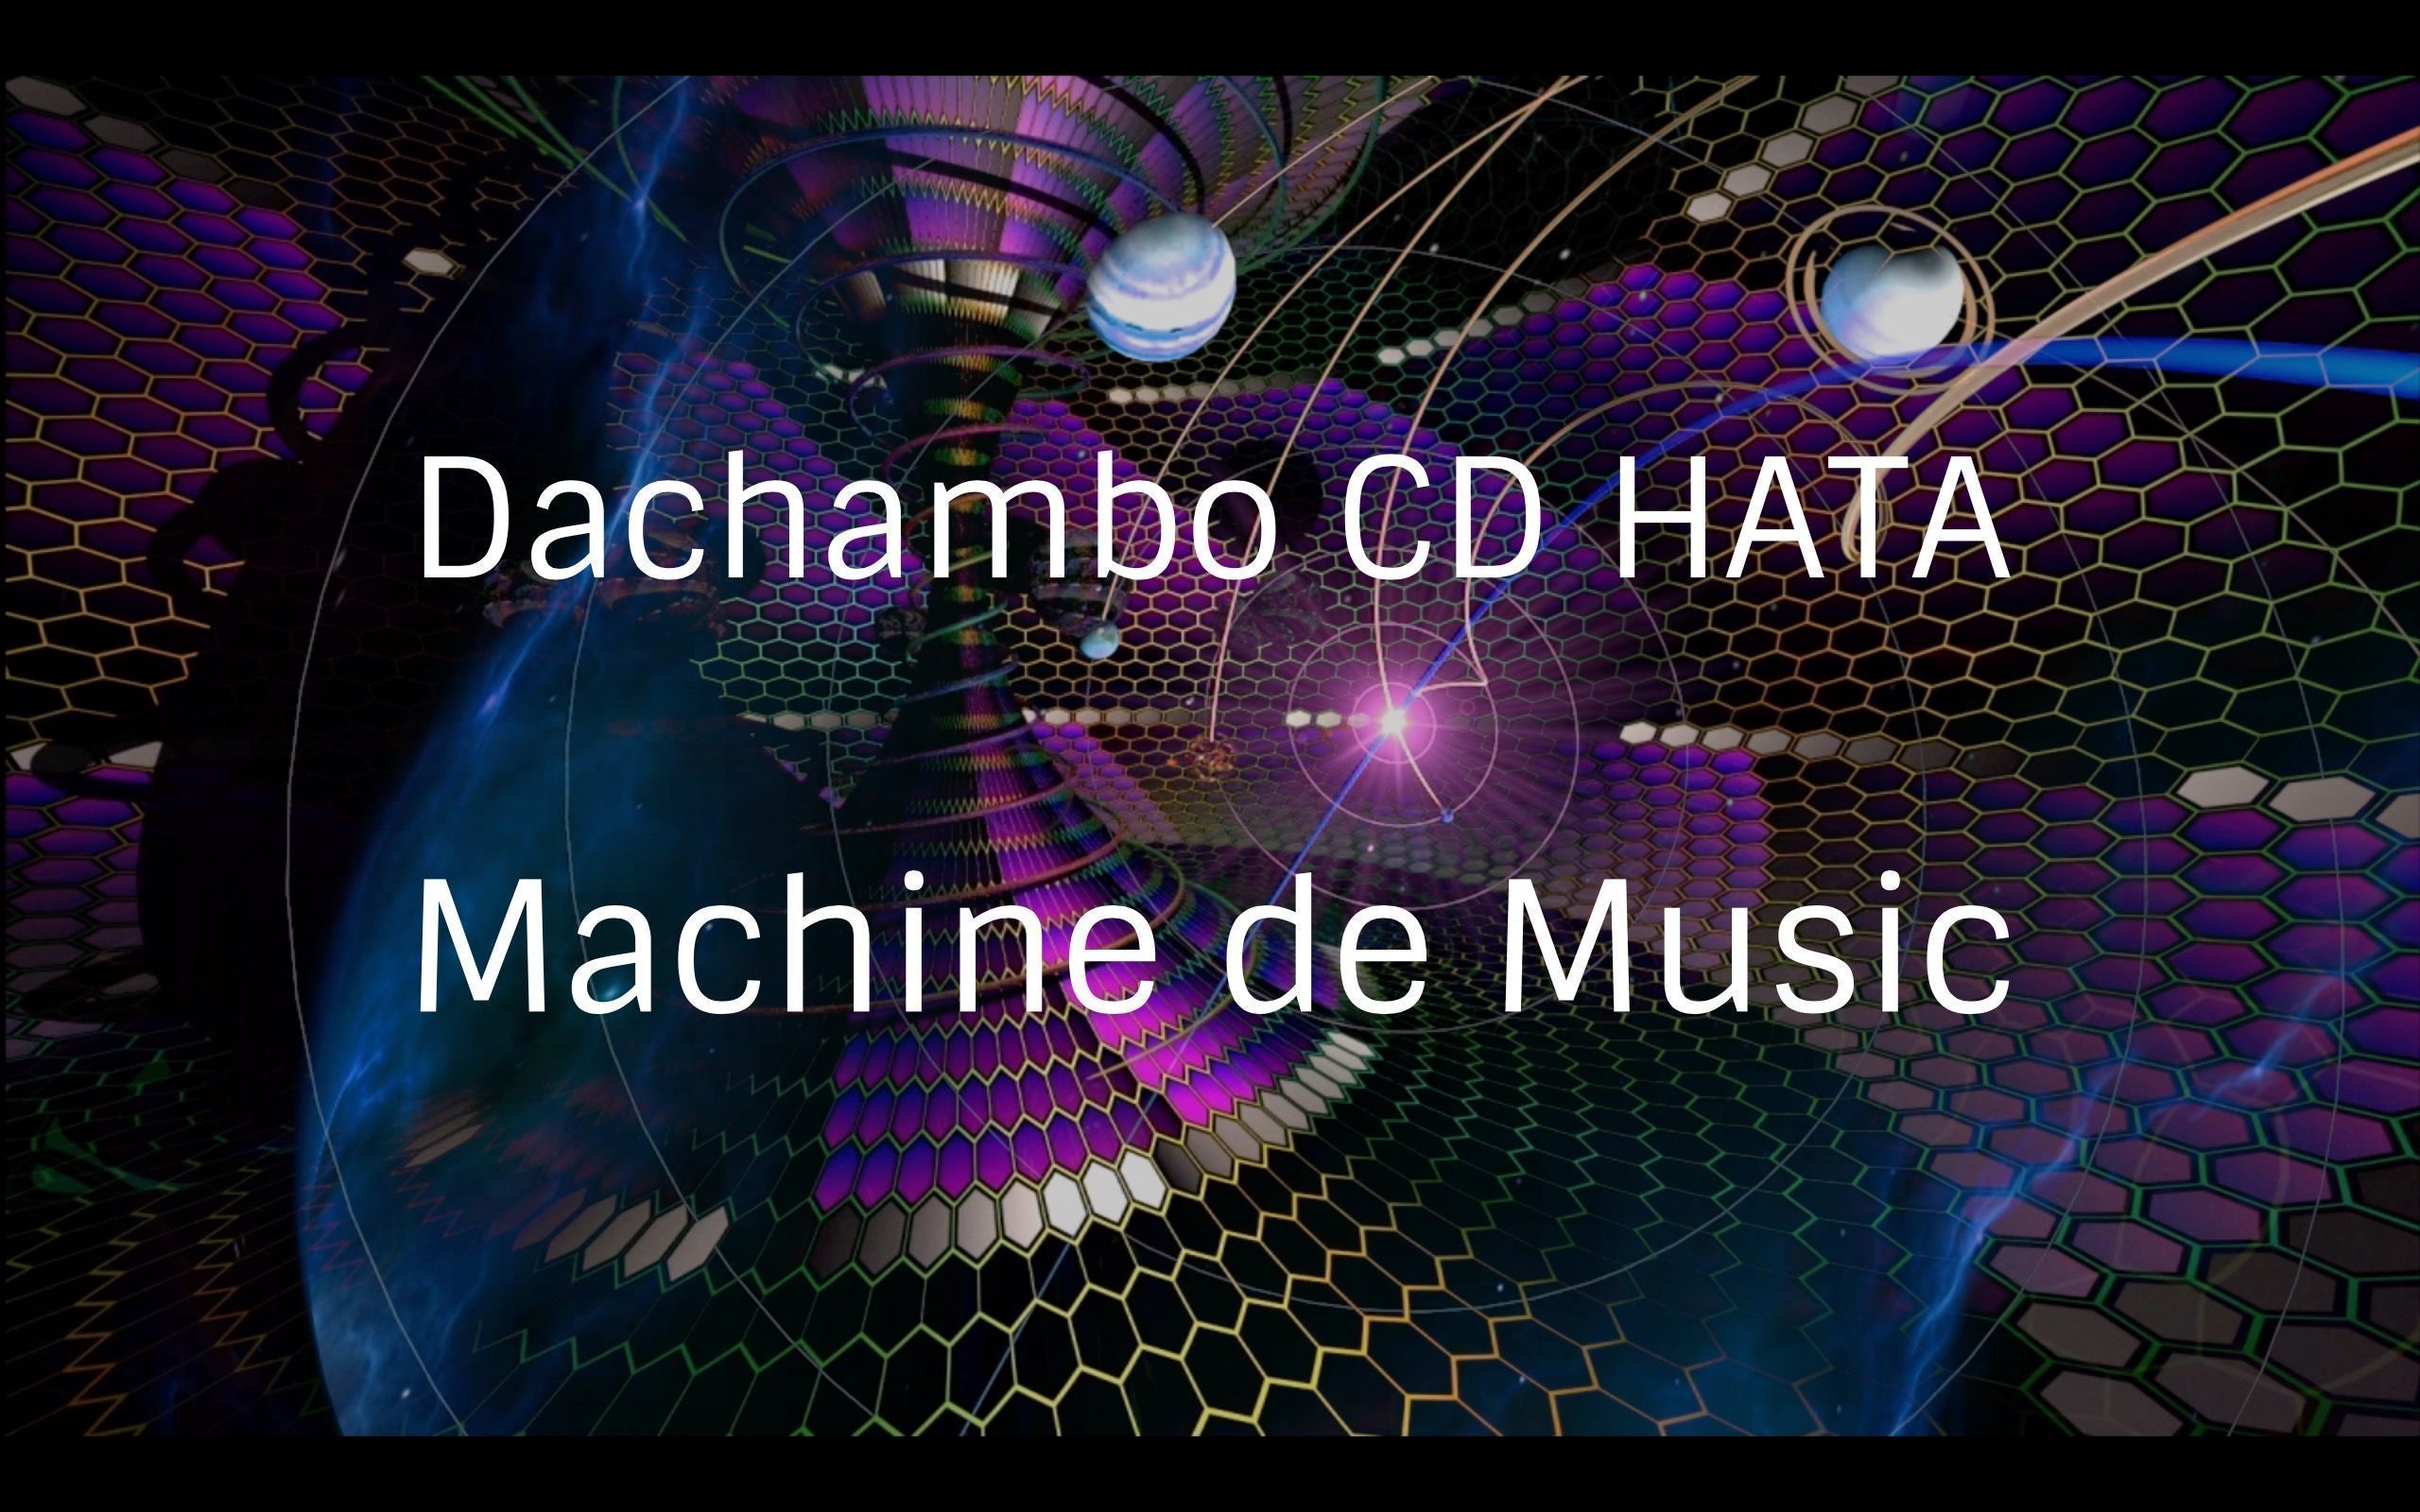 Dachambo CD HATAのMachine de Music コラムVol.48 
ワークショップとマスタリングとワタシ
